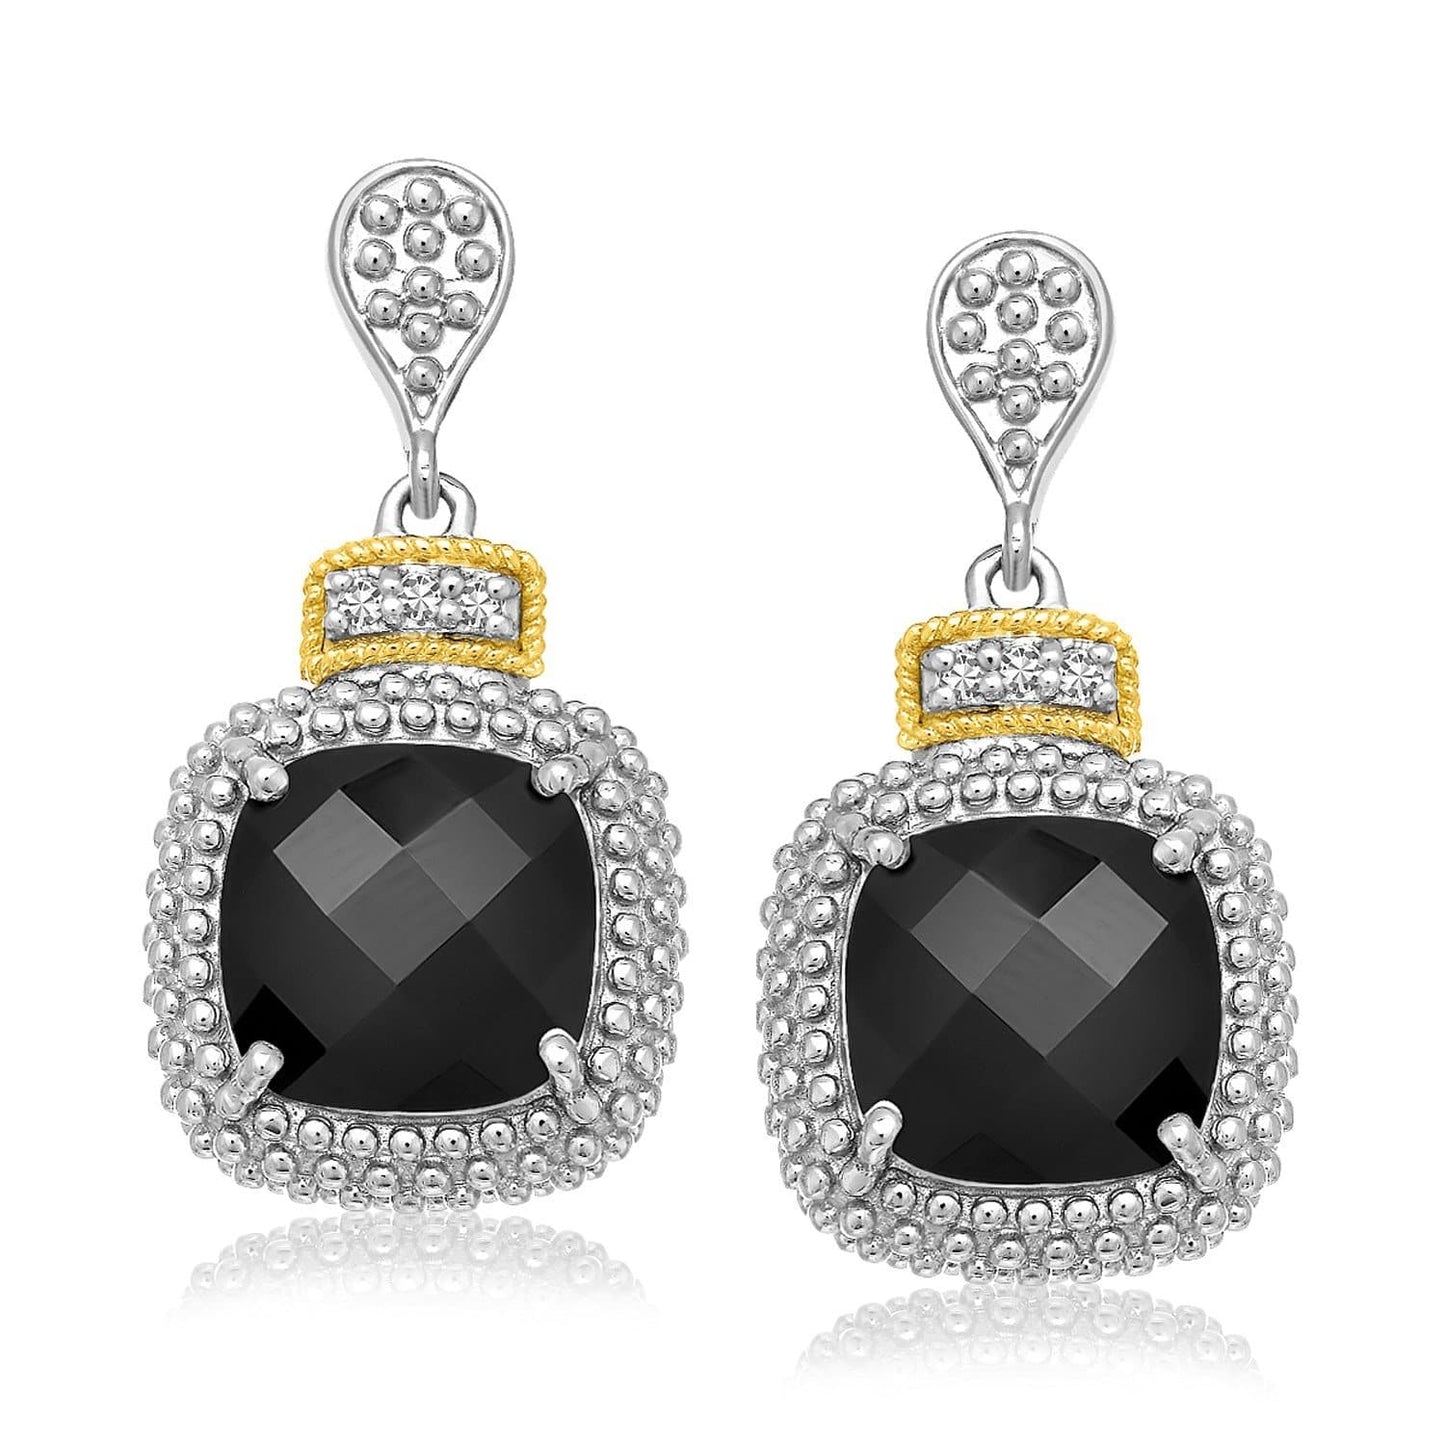 18K Yellow Gold & Sterling Silver Black Onyx & Diamond Earrings